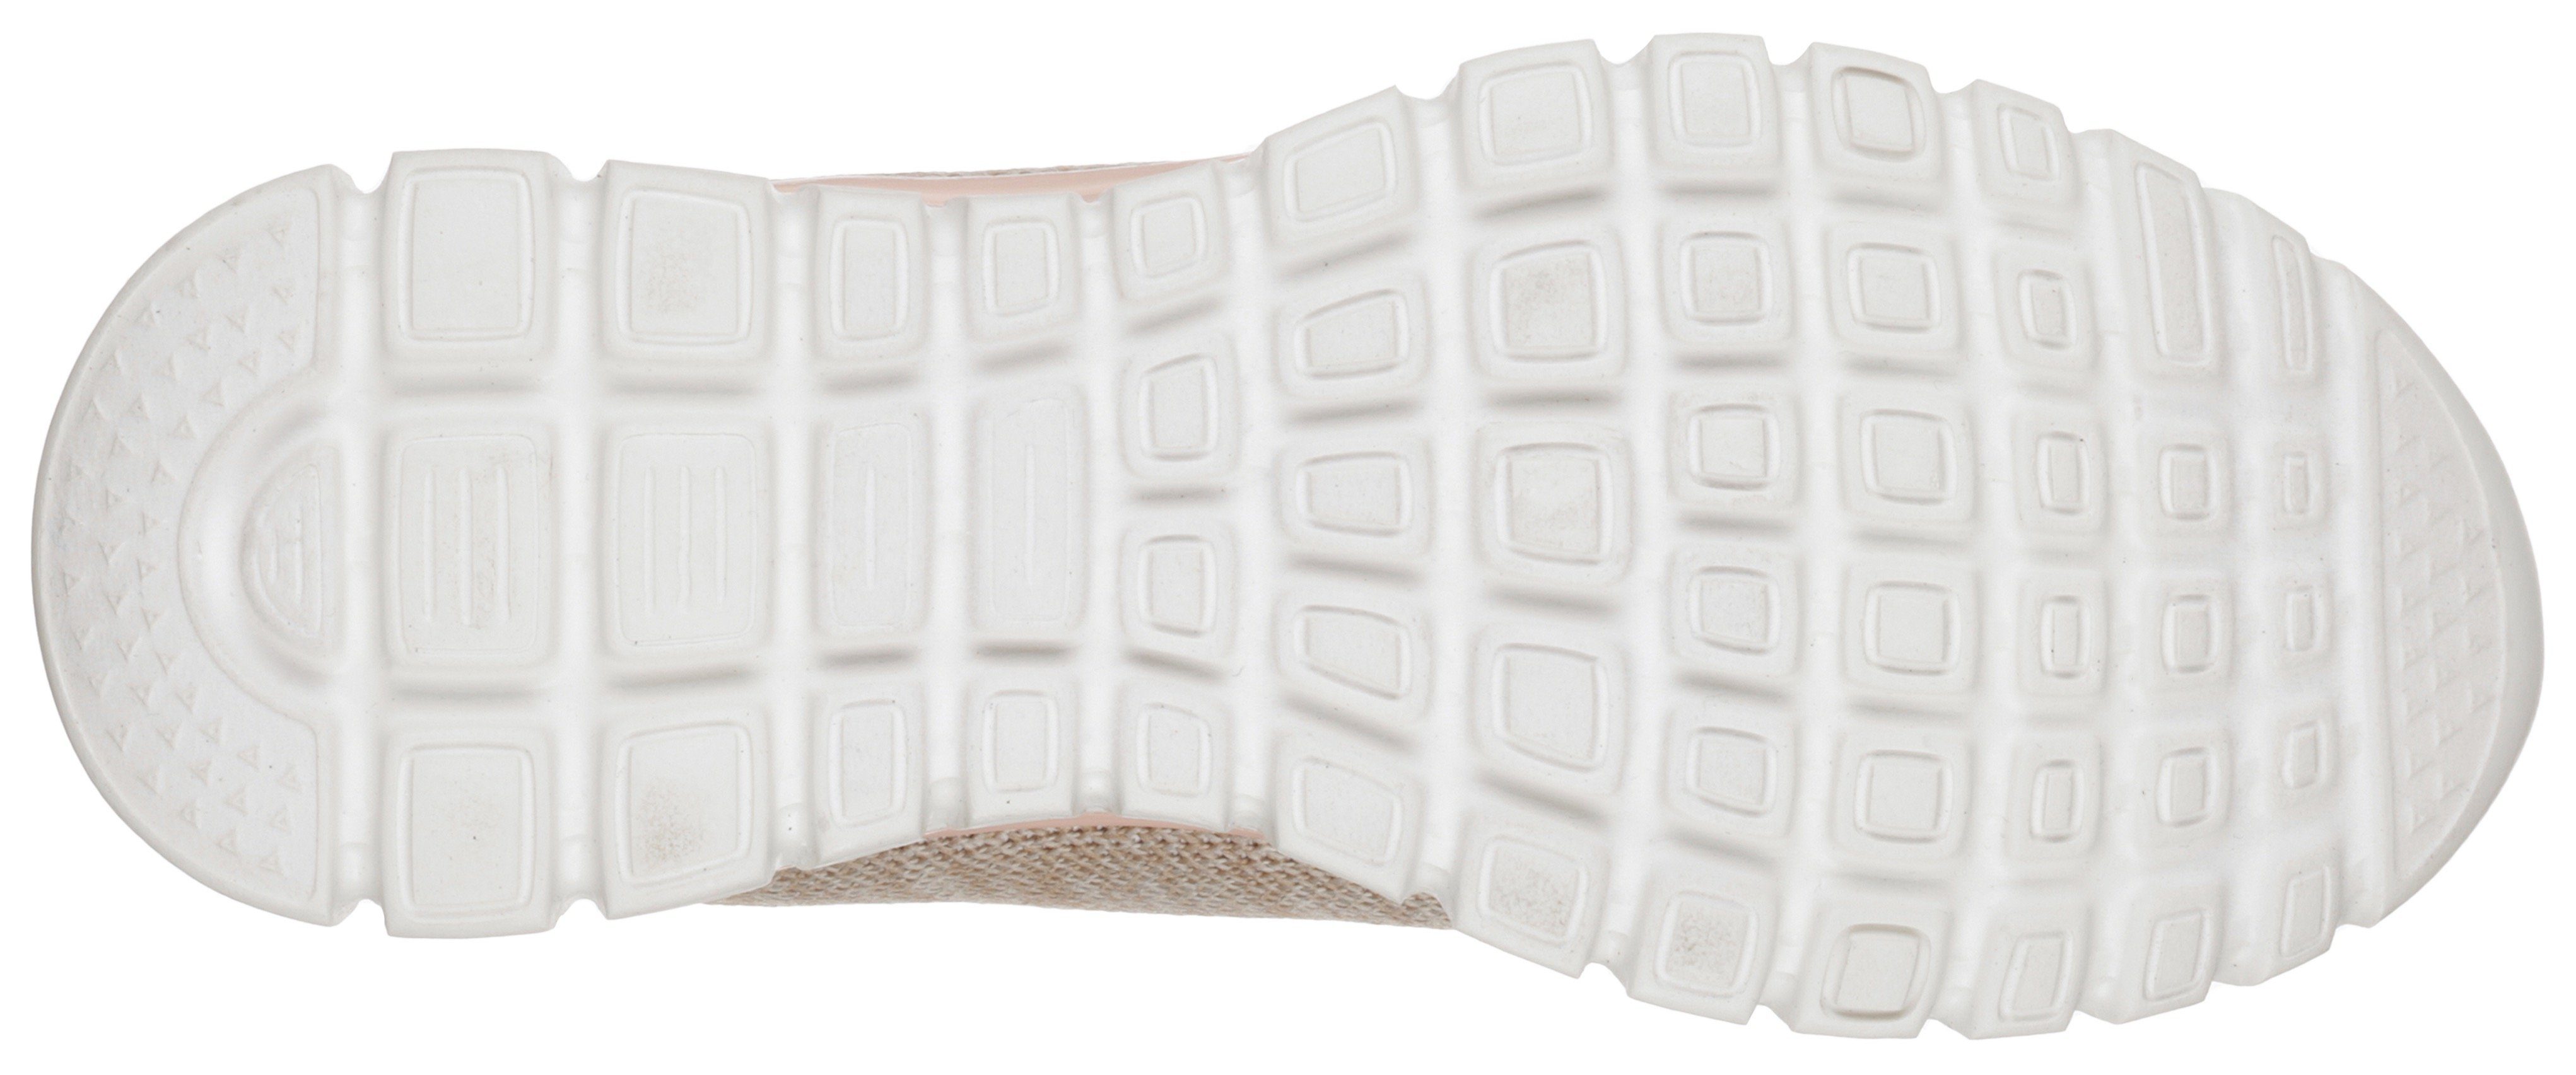 Skechers Graceful - Twisted Foam mit Memory beige-rosa Sneaker Fortune